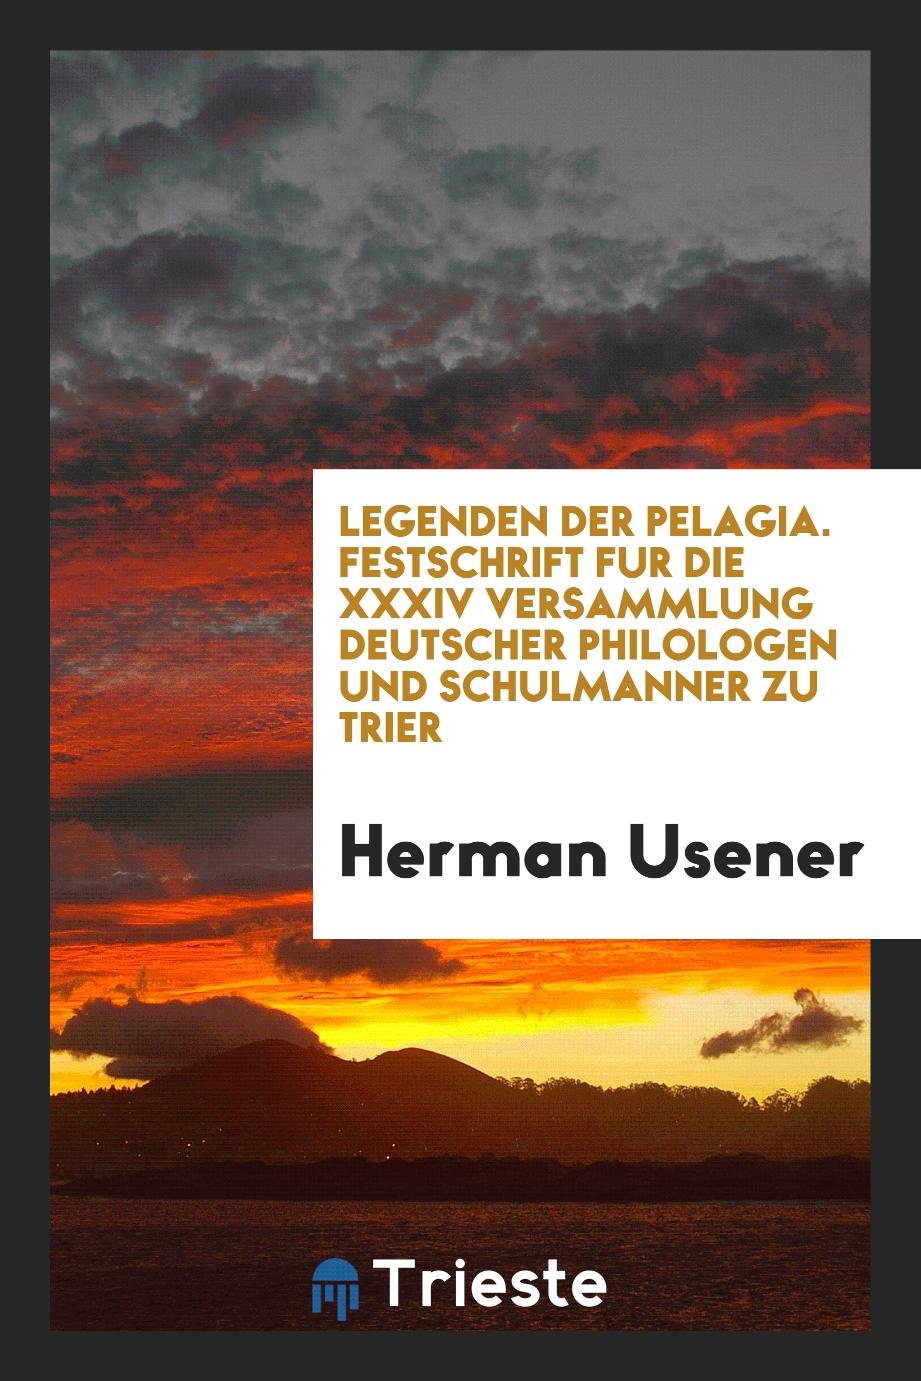 Legenden der Pelagia. Festschrift für die XXXIV Versammlung Deutscher Philologen und Schulmänner zu Trier